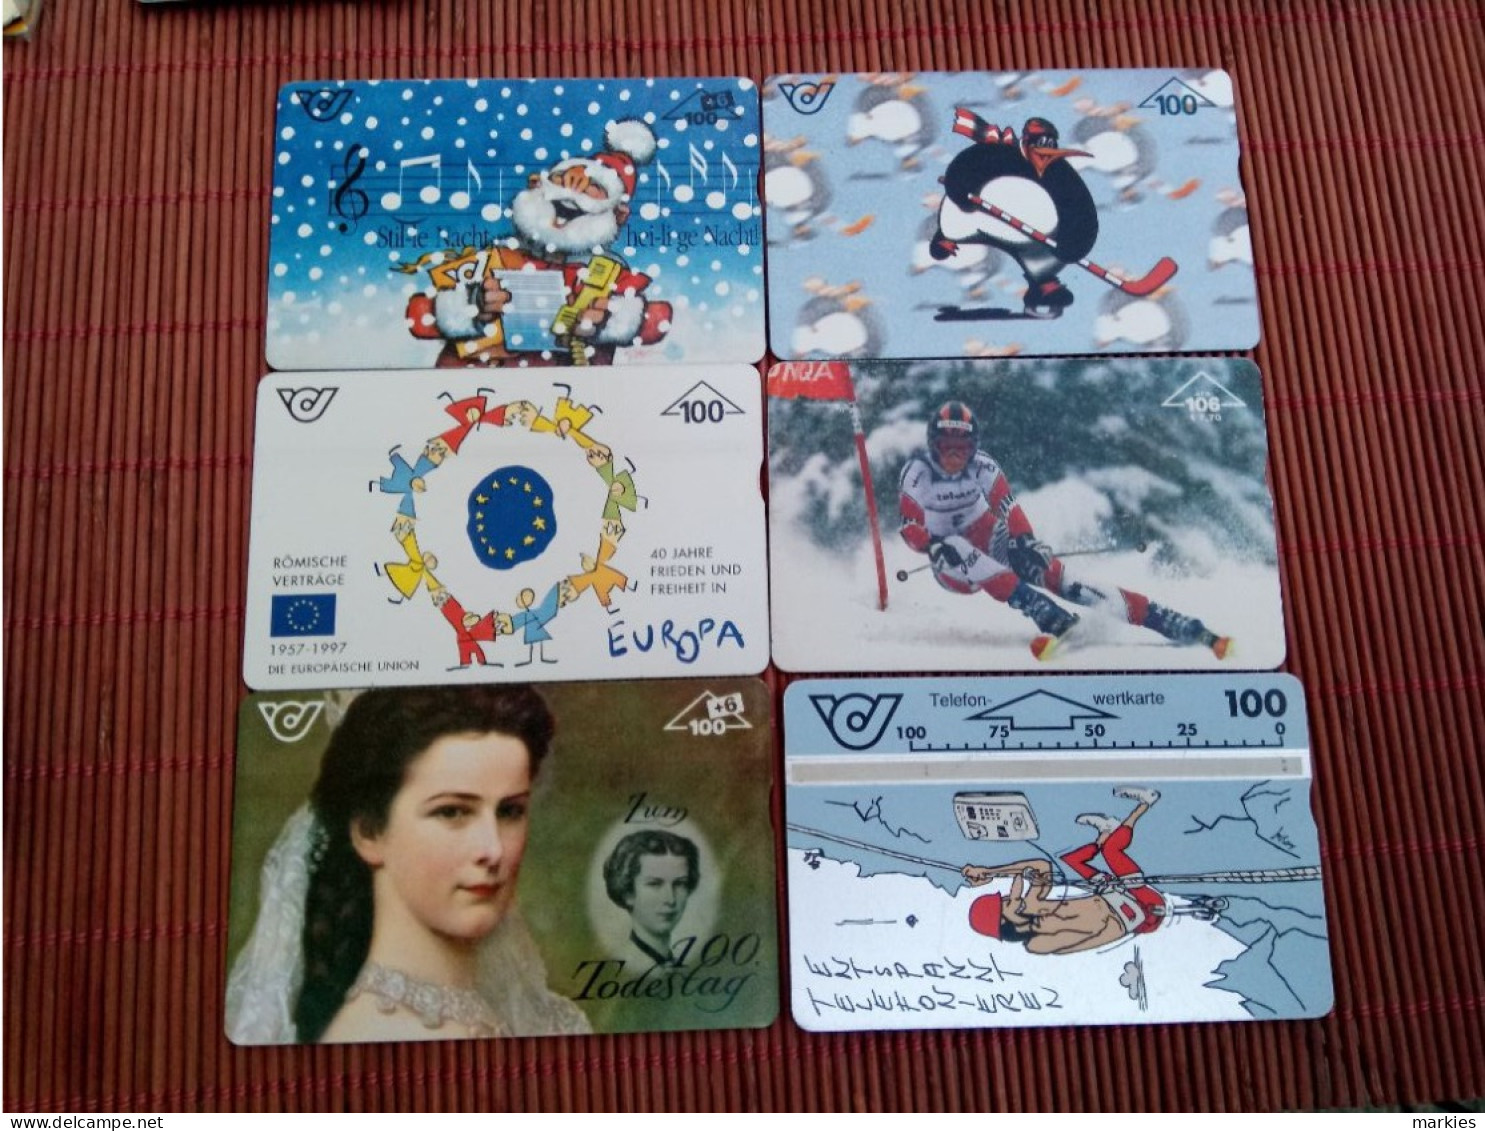 6 Phonecards Austria 100 Units Used Rare - Austria